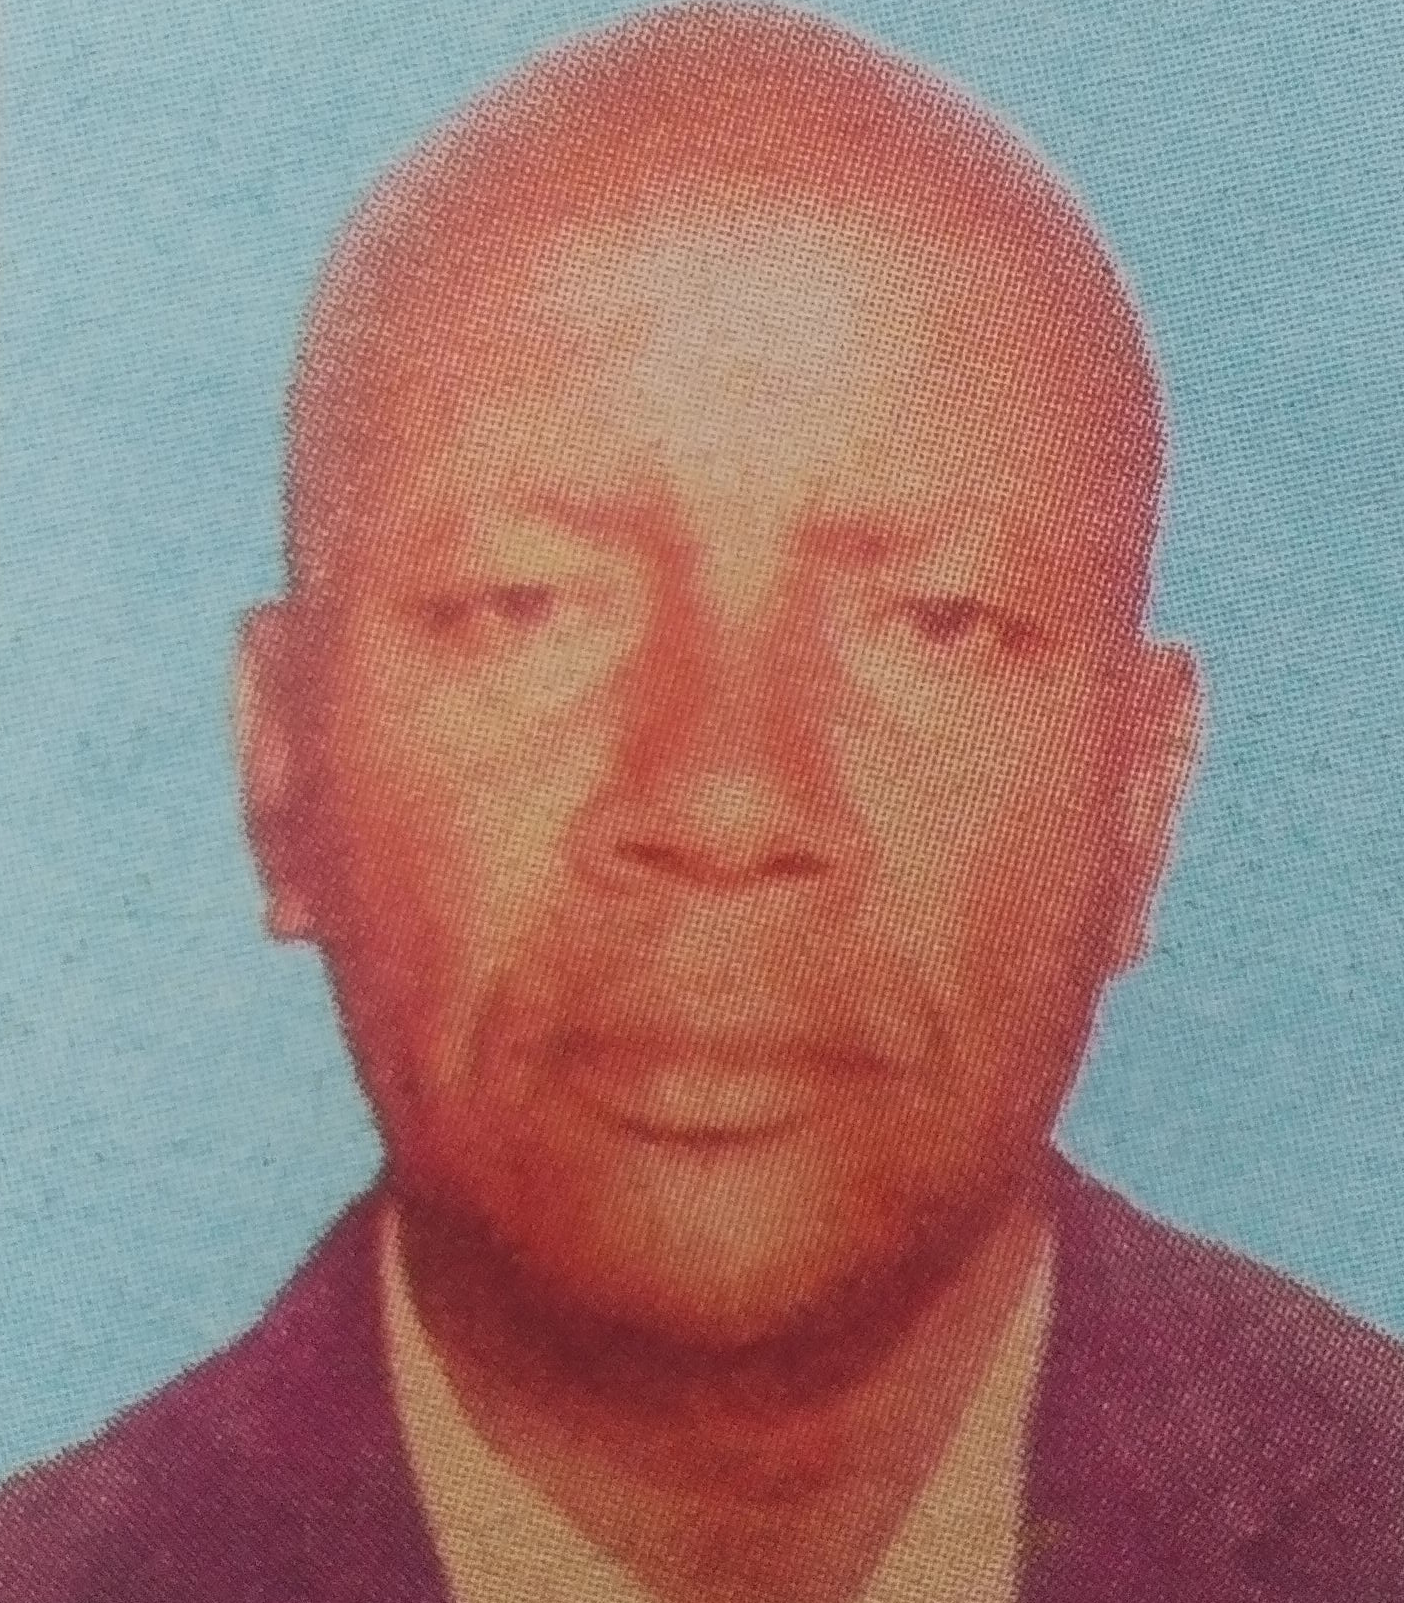 Obituary Image of John Chimba Kibe